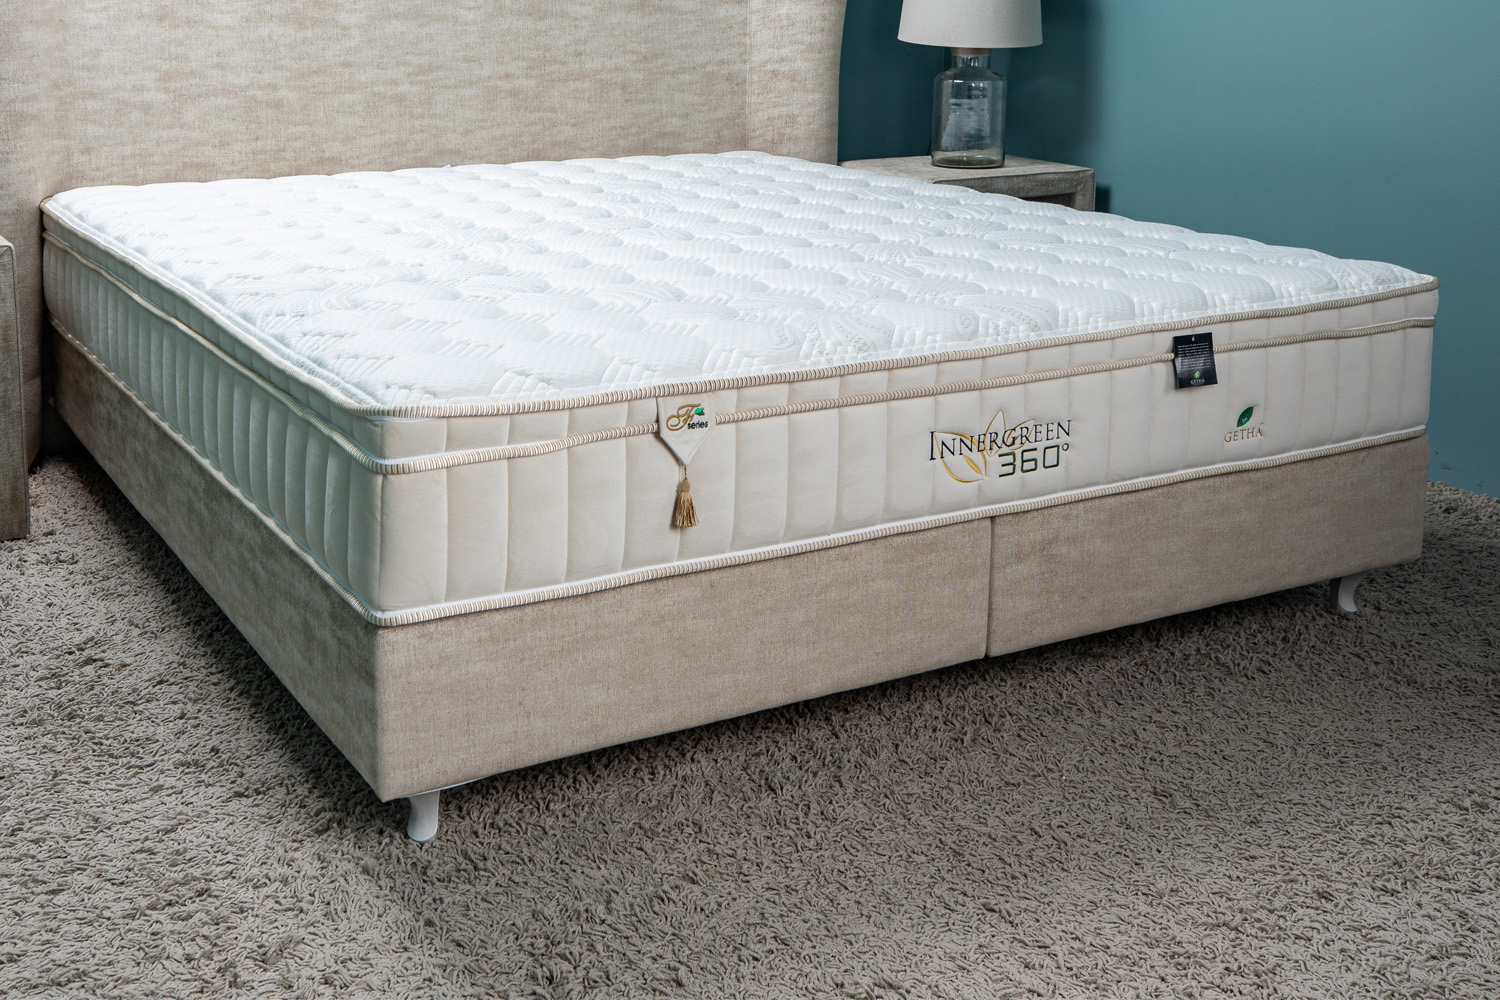 is green mattress better than purple mattress